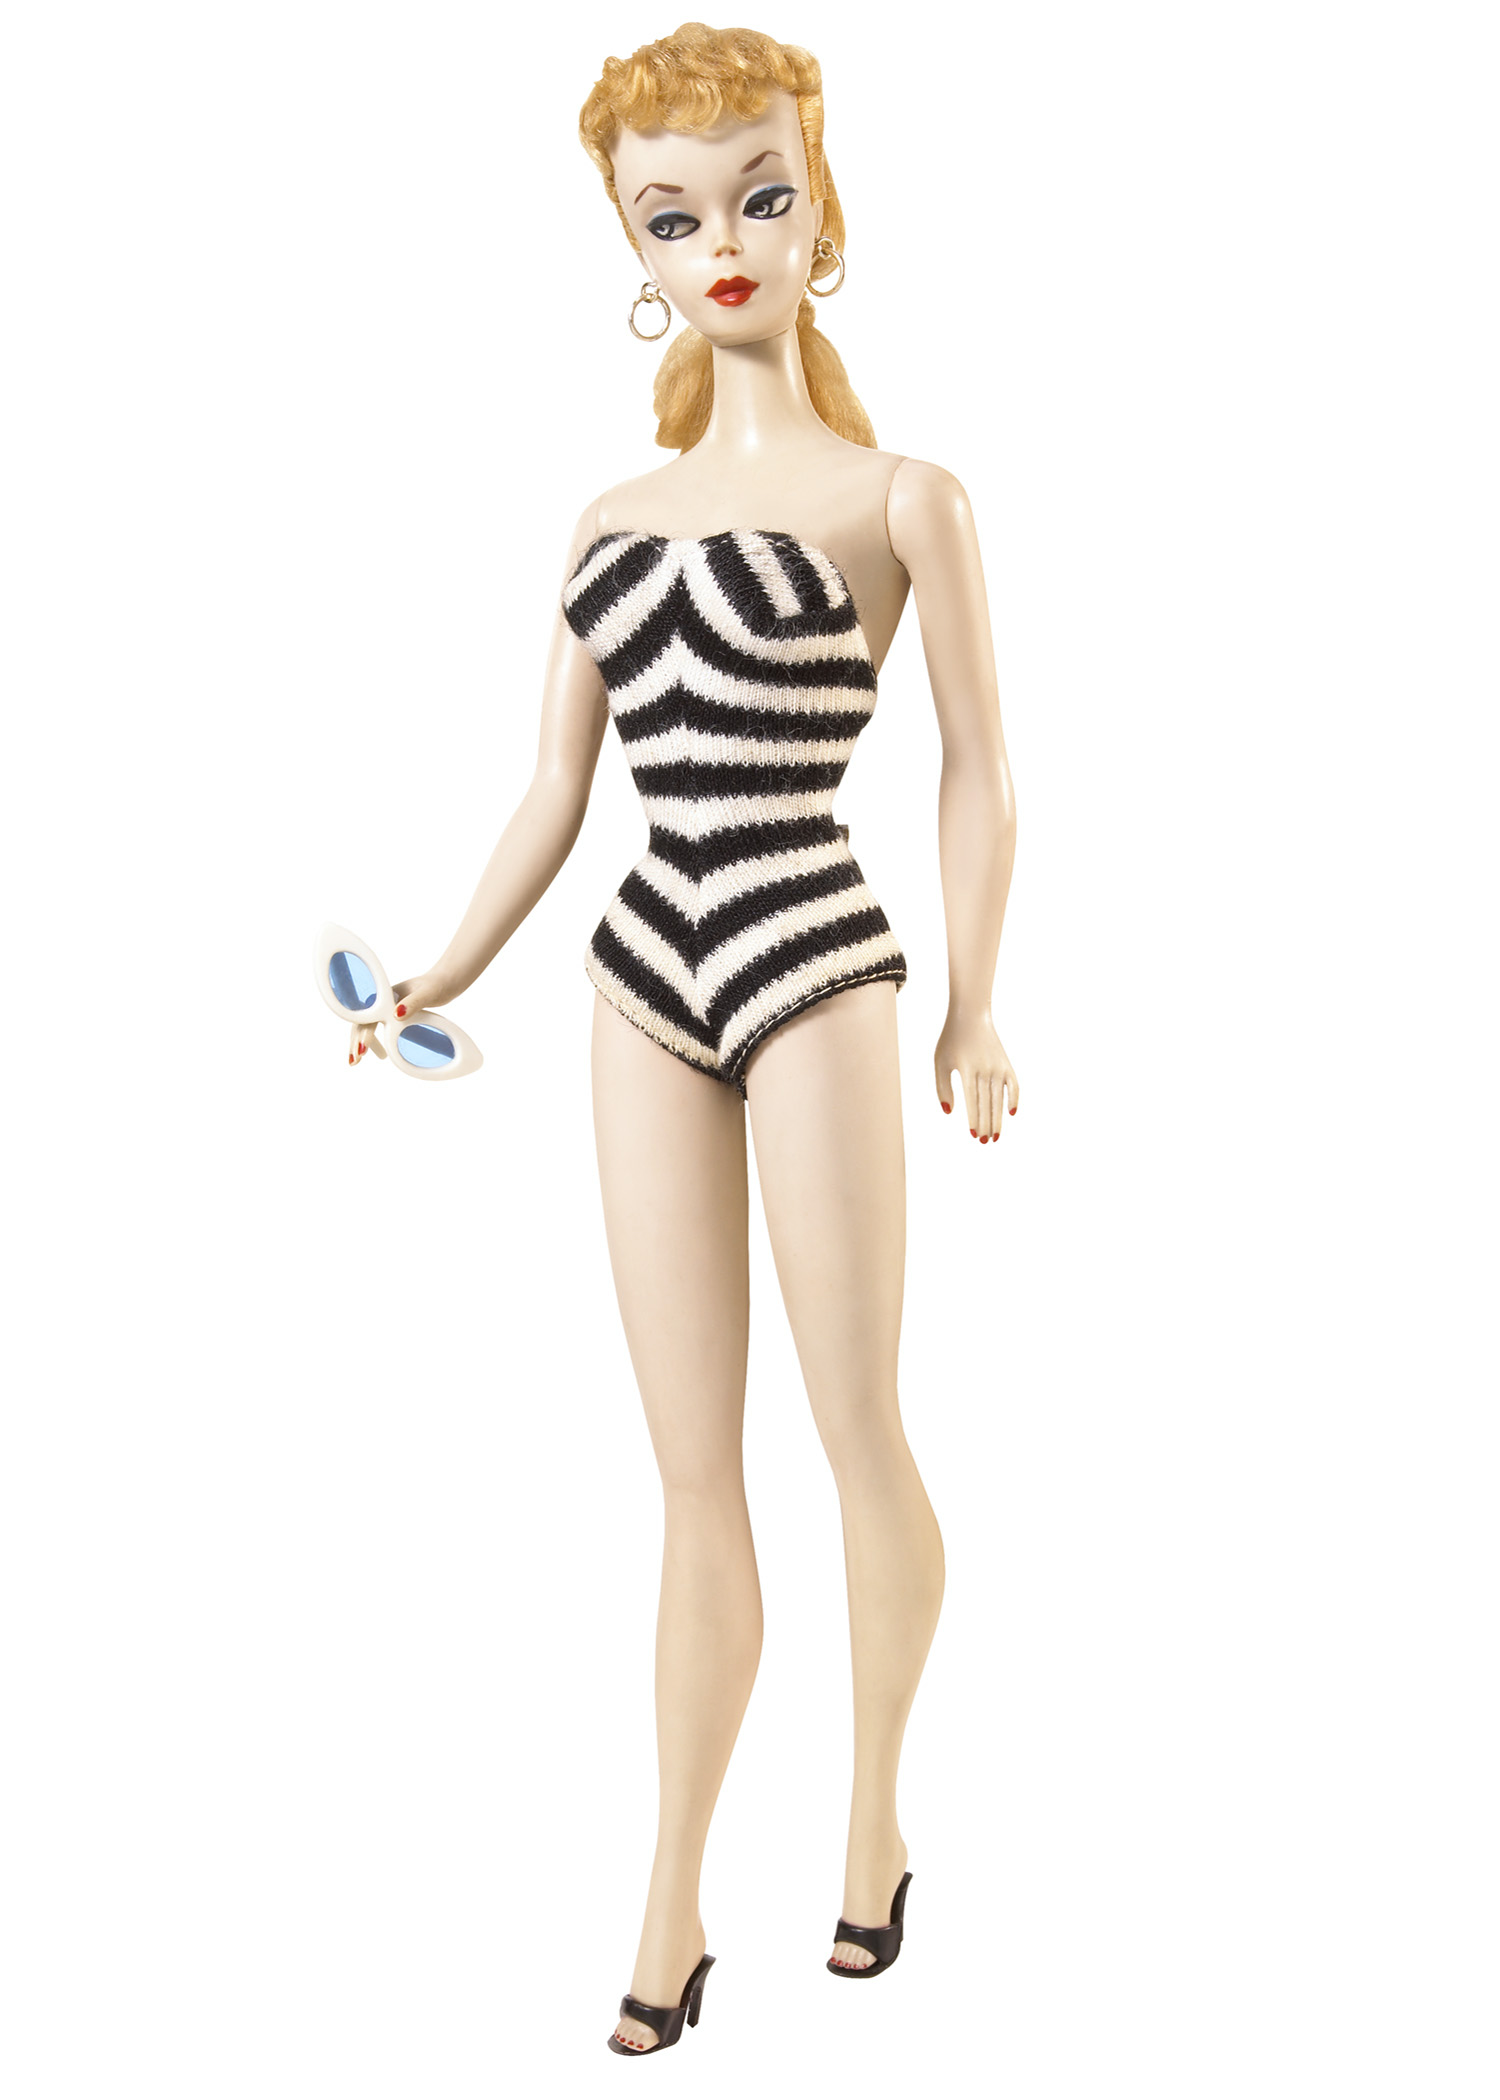 La toute première Barbie commercialisée, en 1959. © Mattel